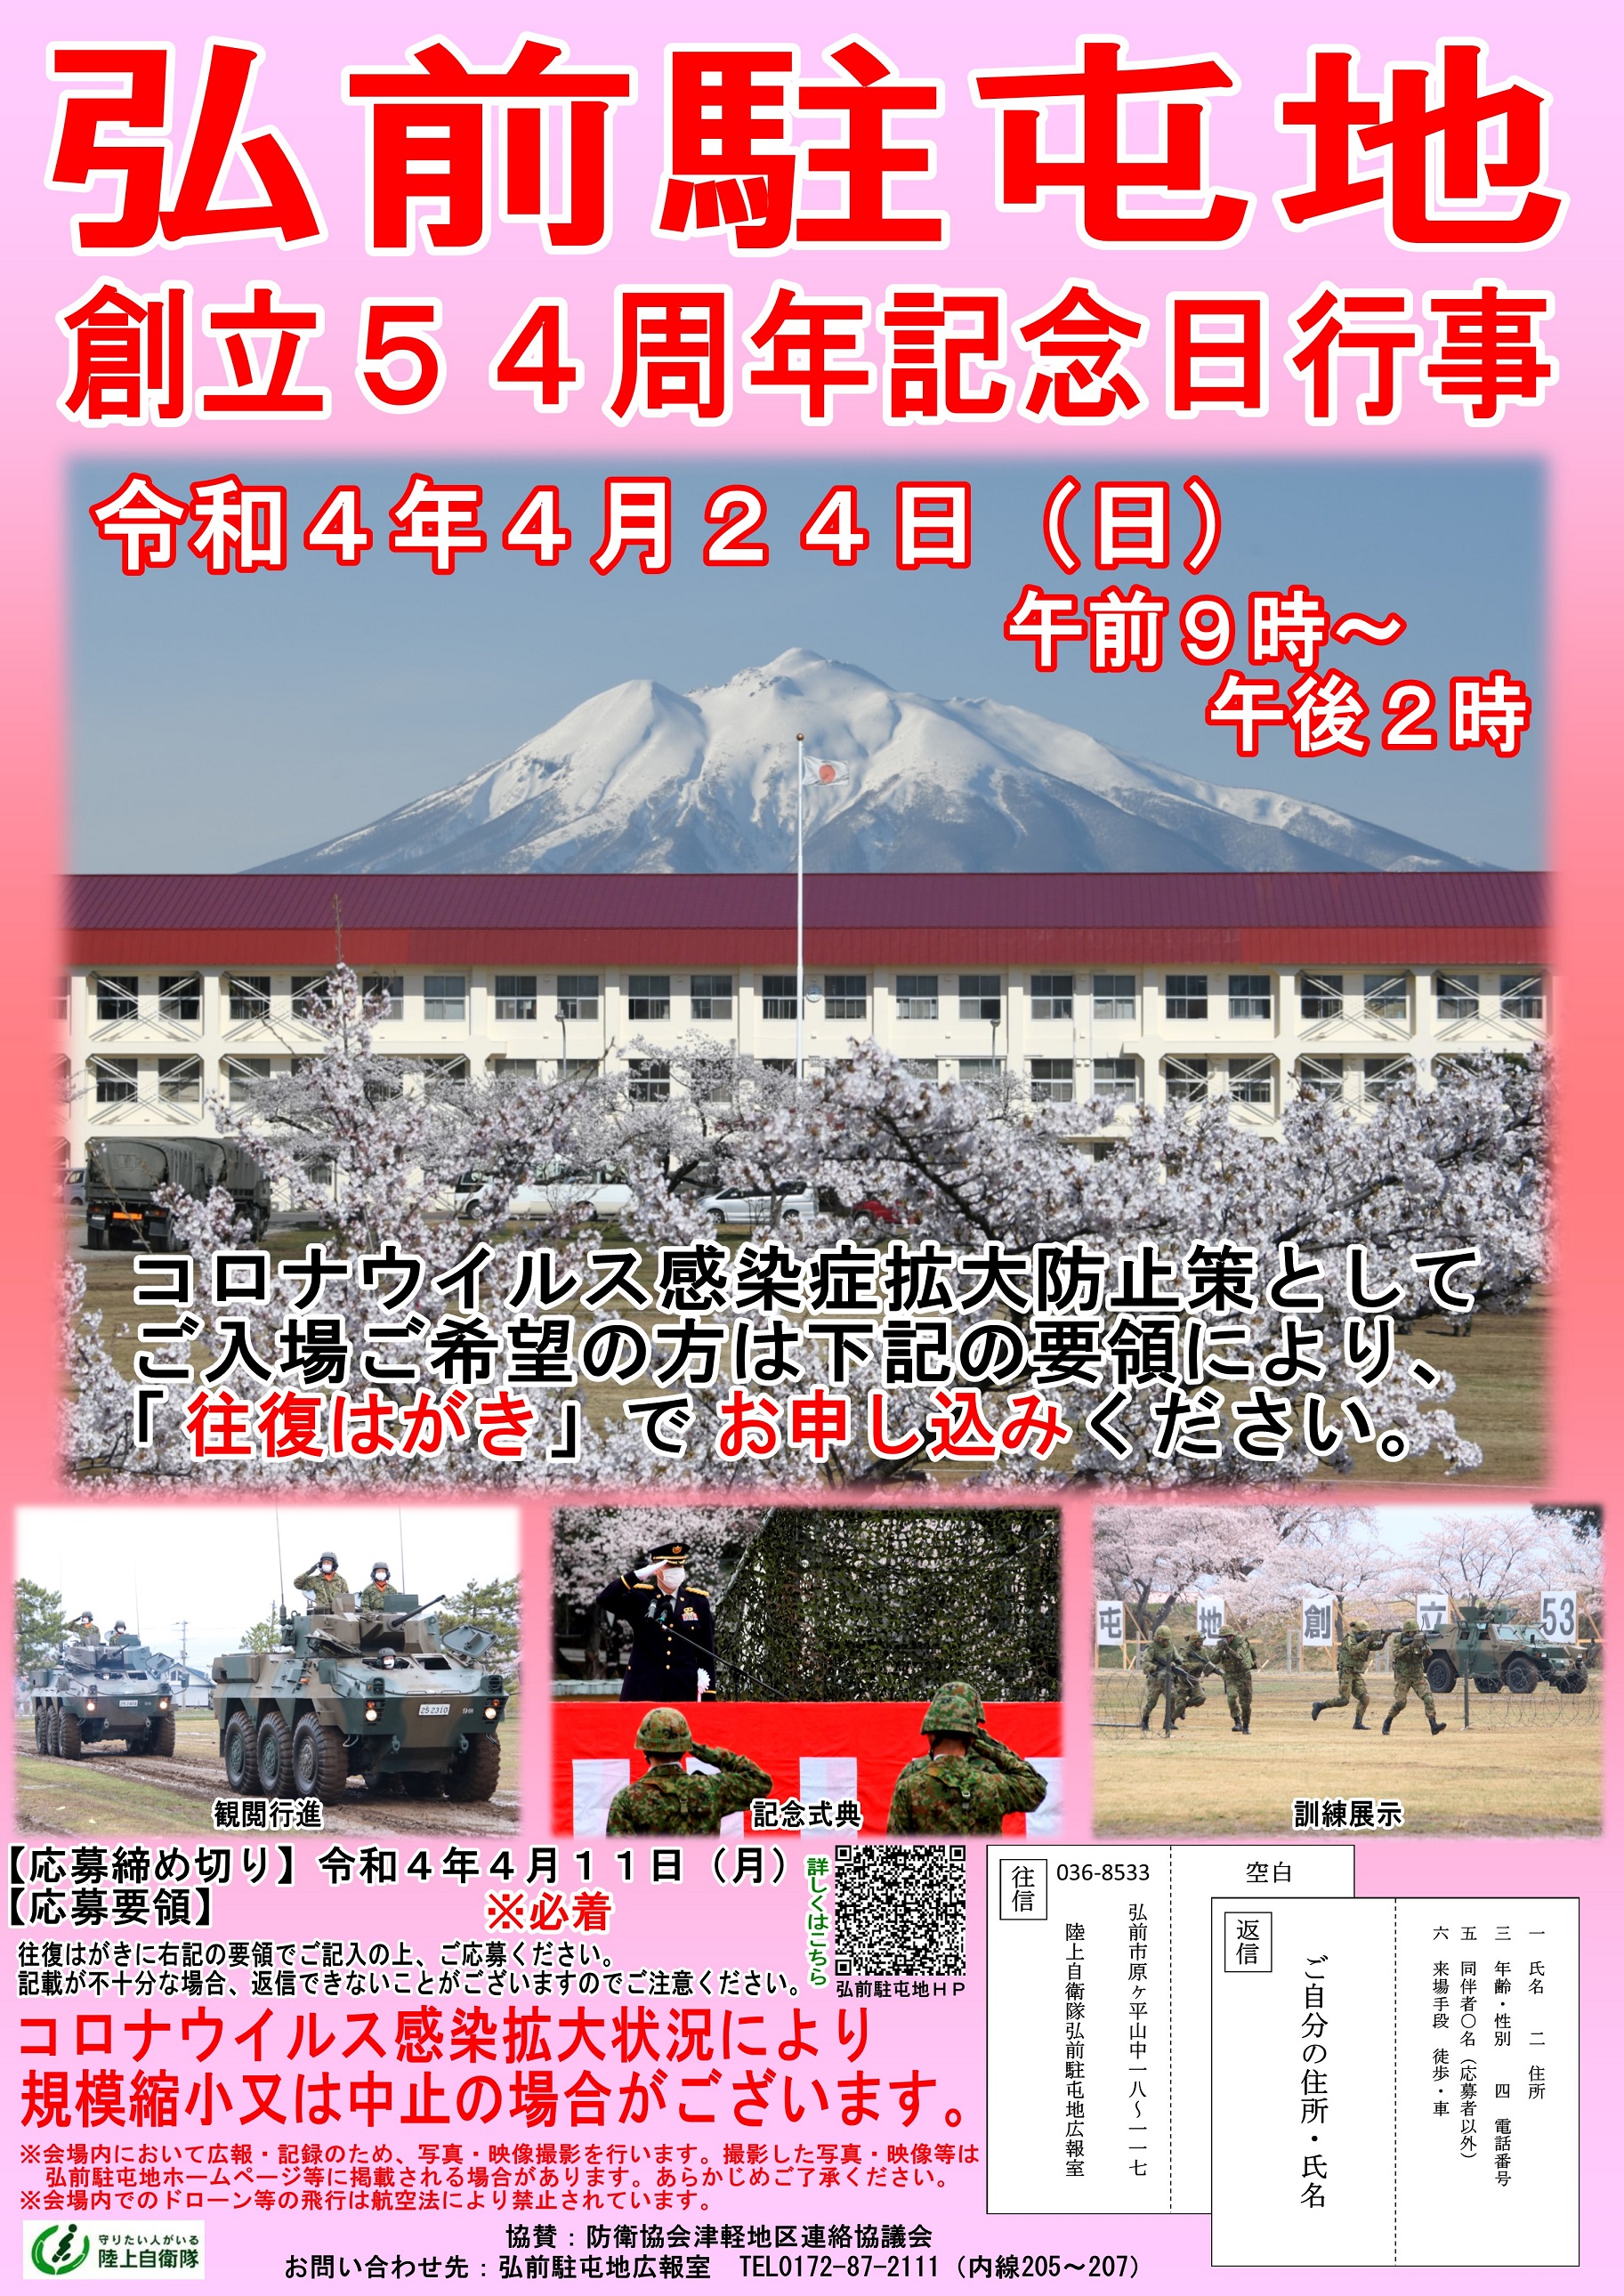 弘前駐屯地 創立54周年記念日行事ポスター